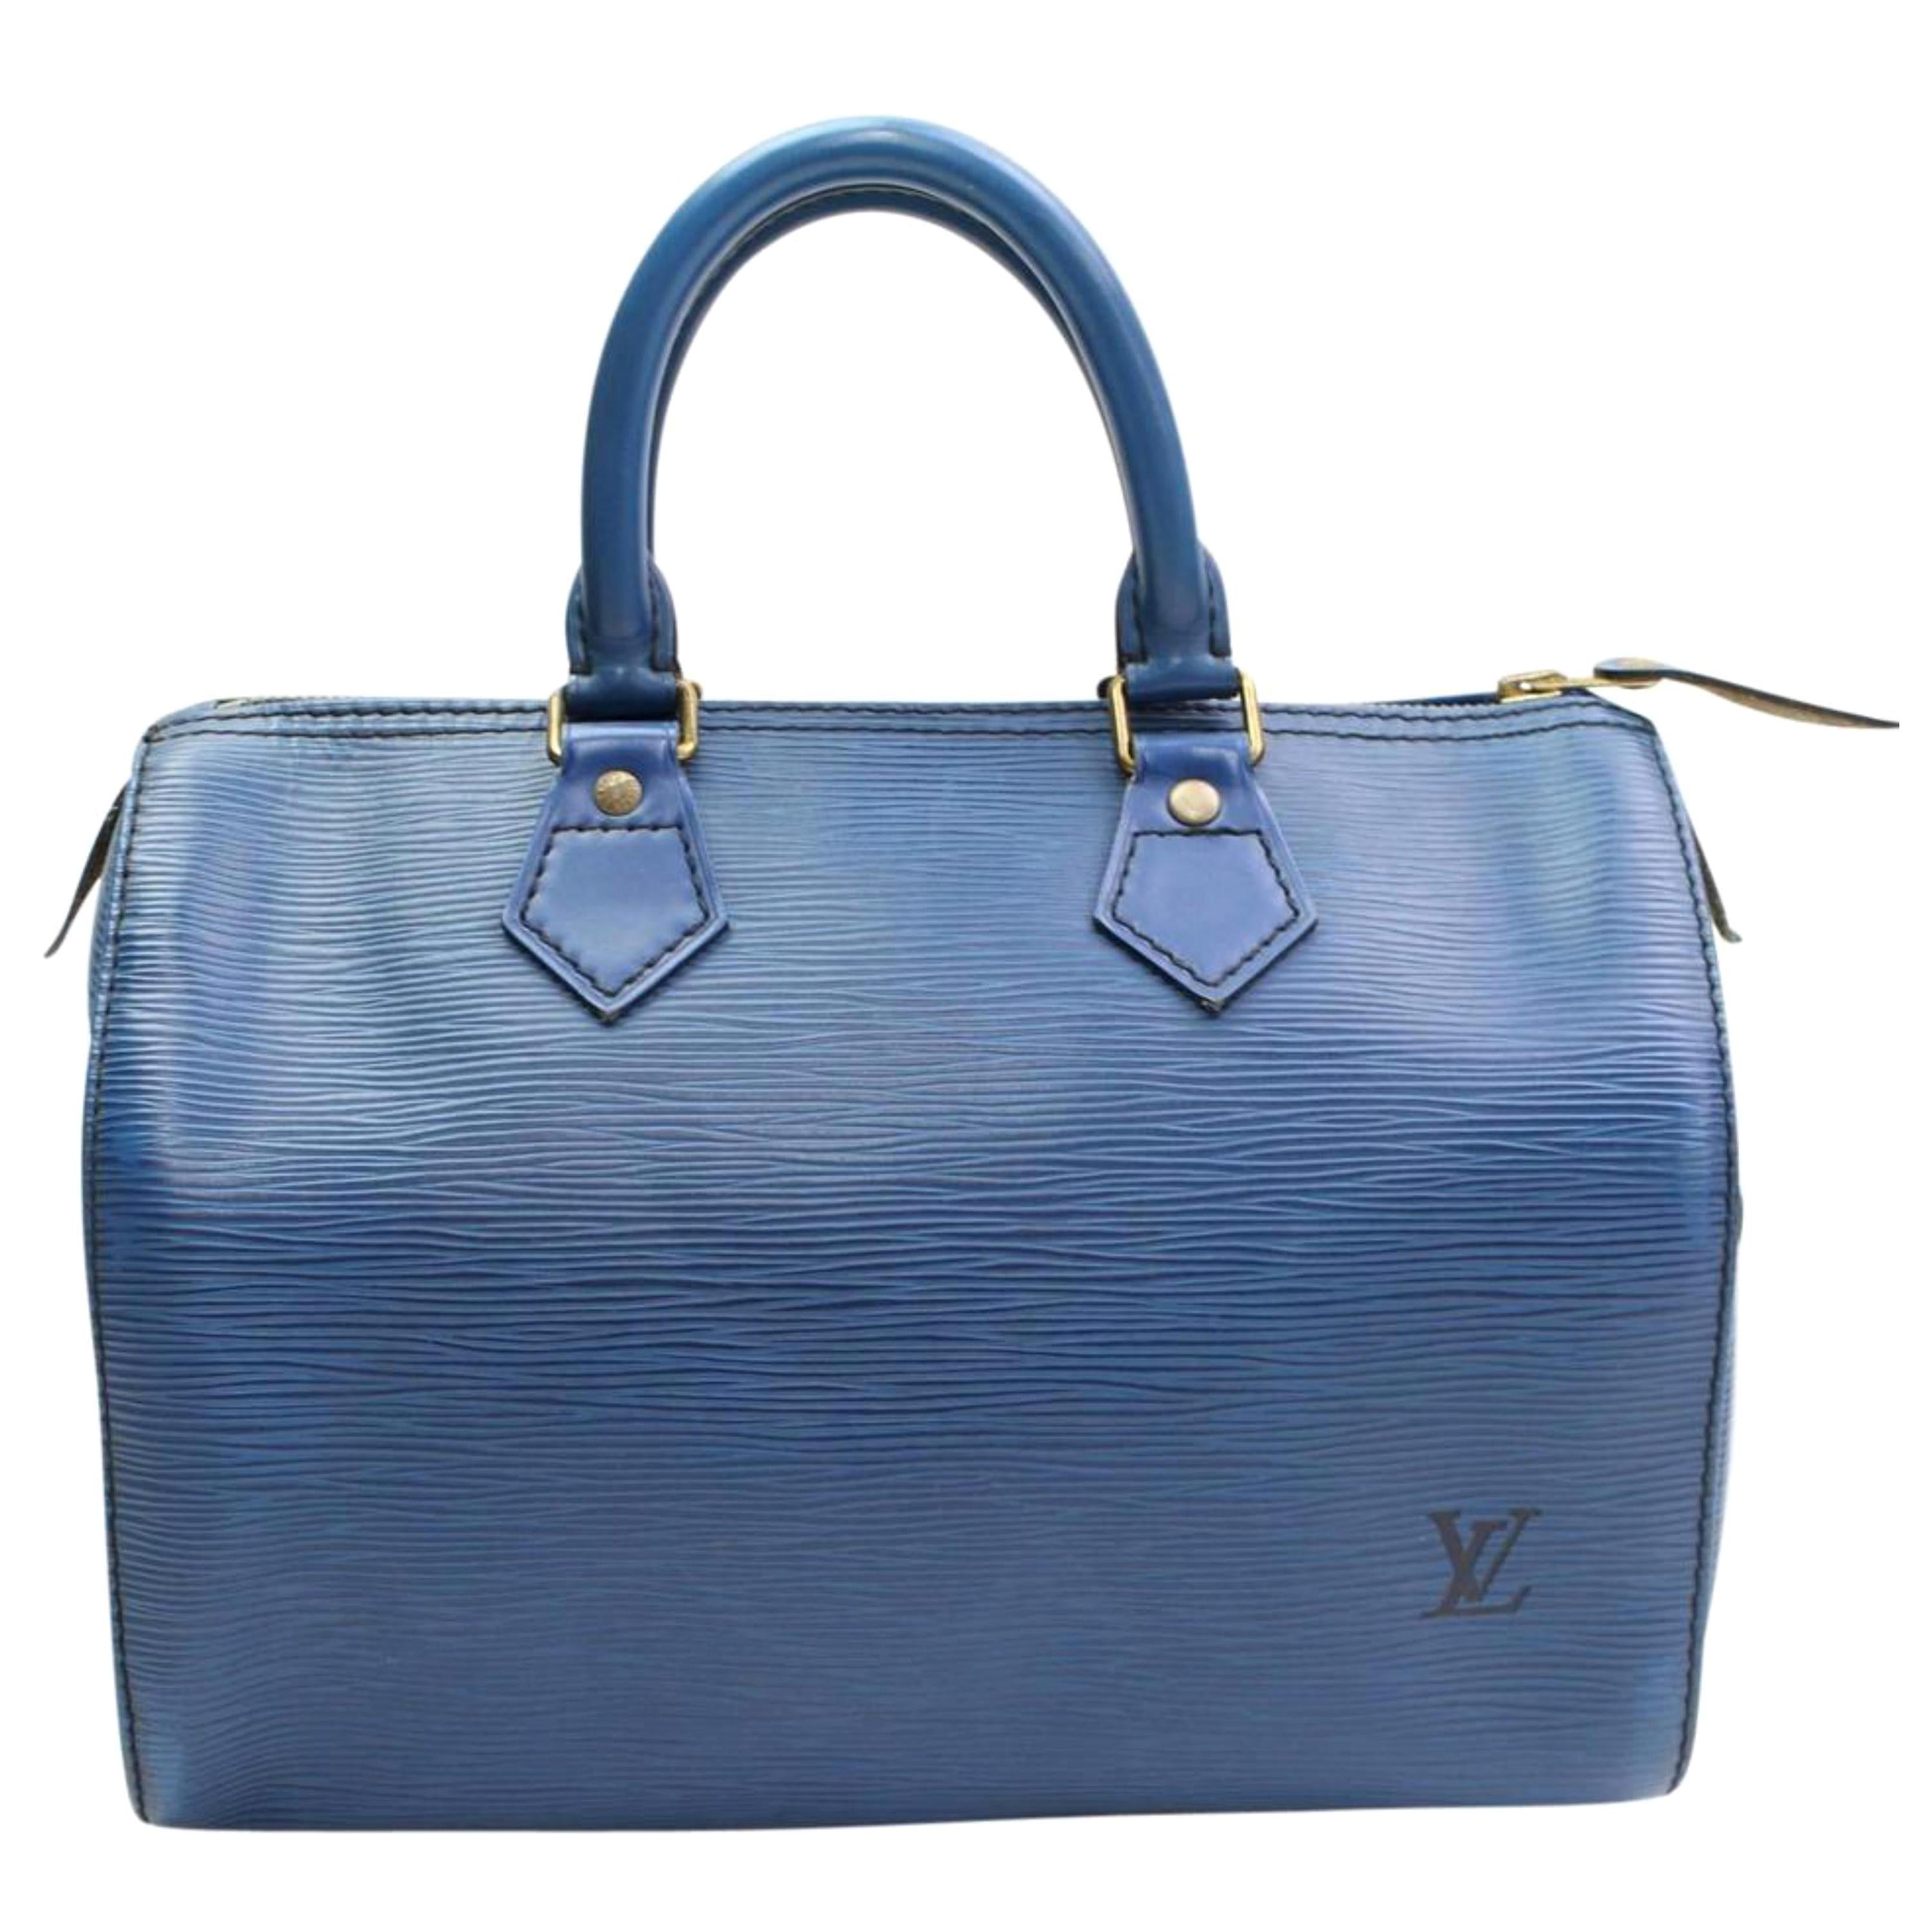 Louis Vuitton Speedy Epi 25 868003 Blue Leather Satchel For Sale